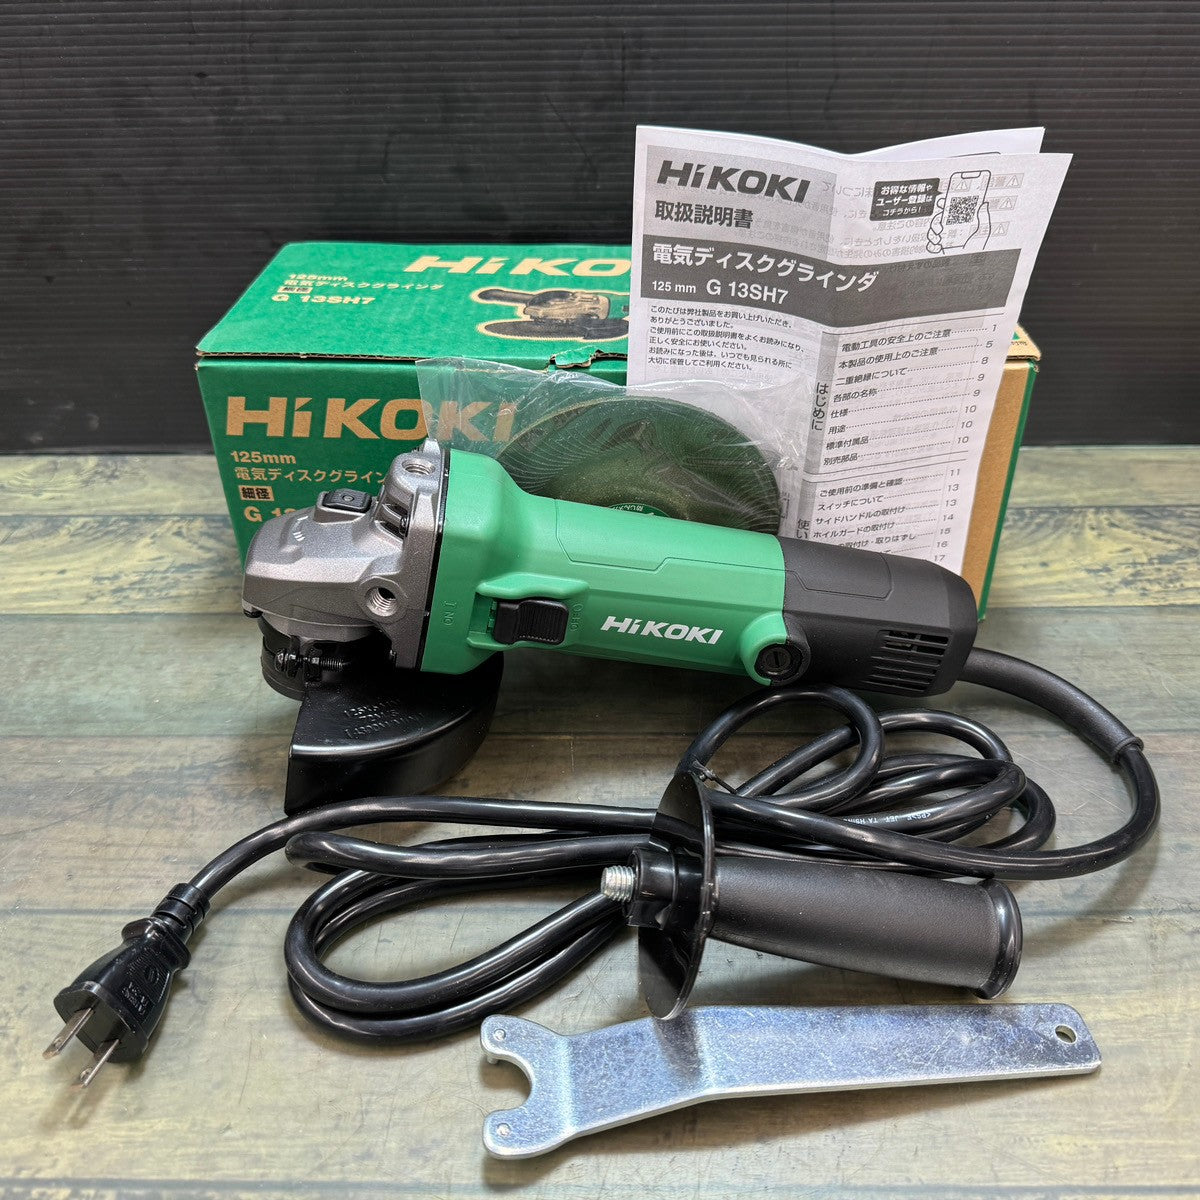 HiKOKI電気ディスクグラインダ125mm - メンテナンス